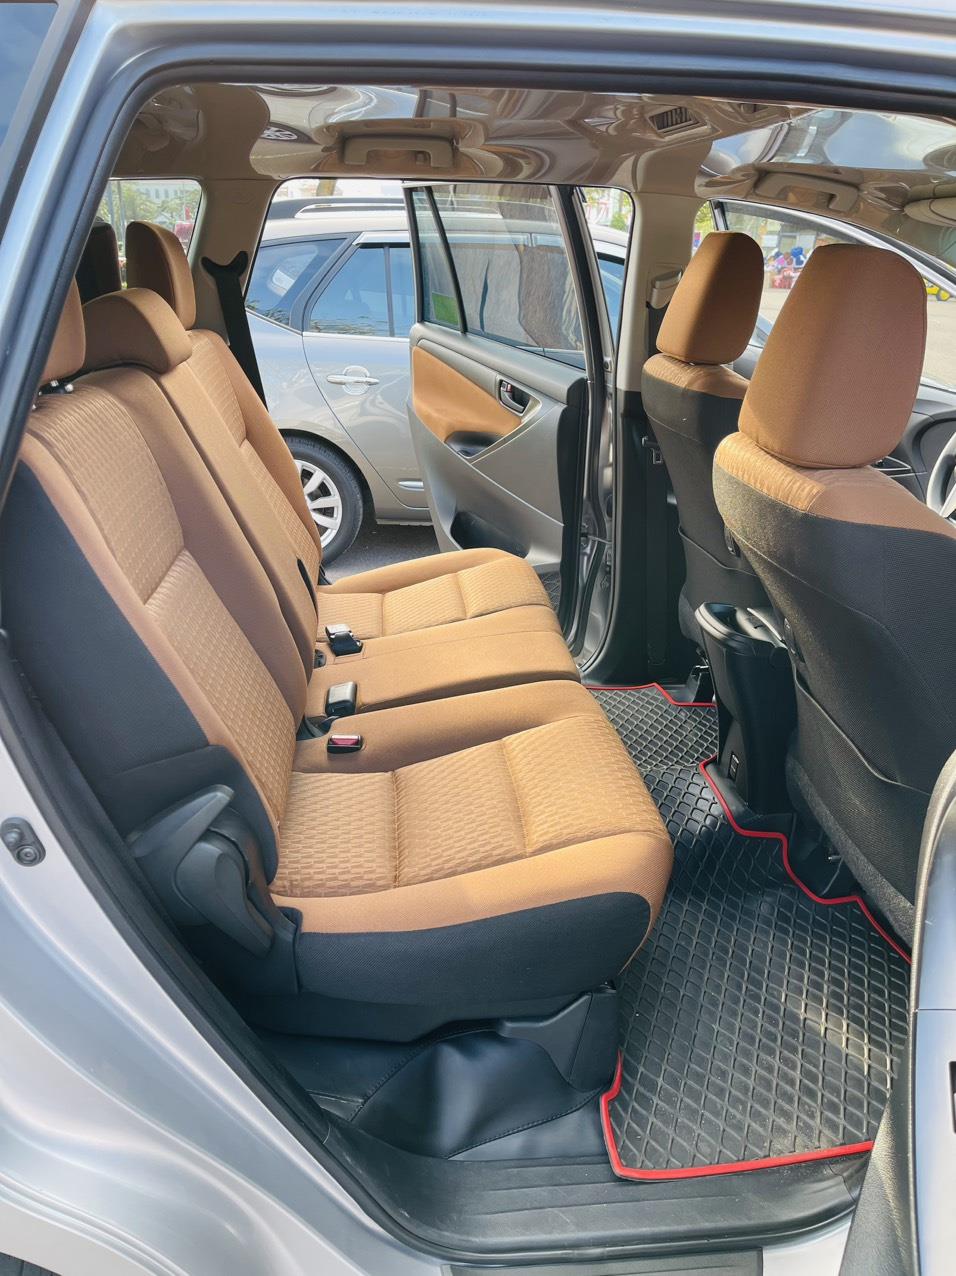 UUsed Car Dealer Trimap đang bán; Toyota Innova E 2.0 sx 2019, đăng ký 2020 một chủ mua mới đầu. 407717